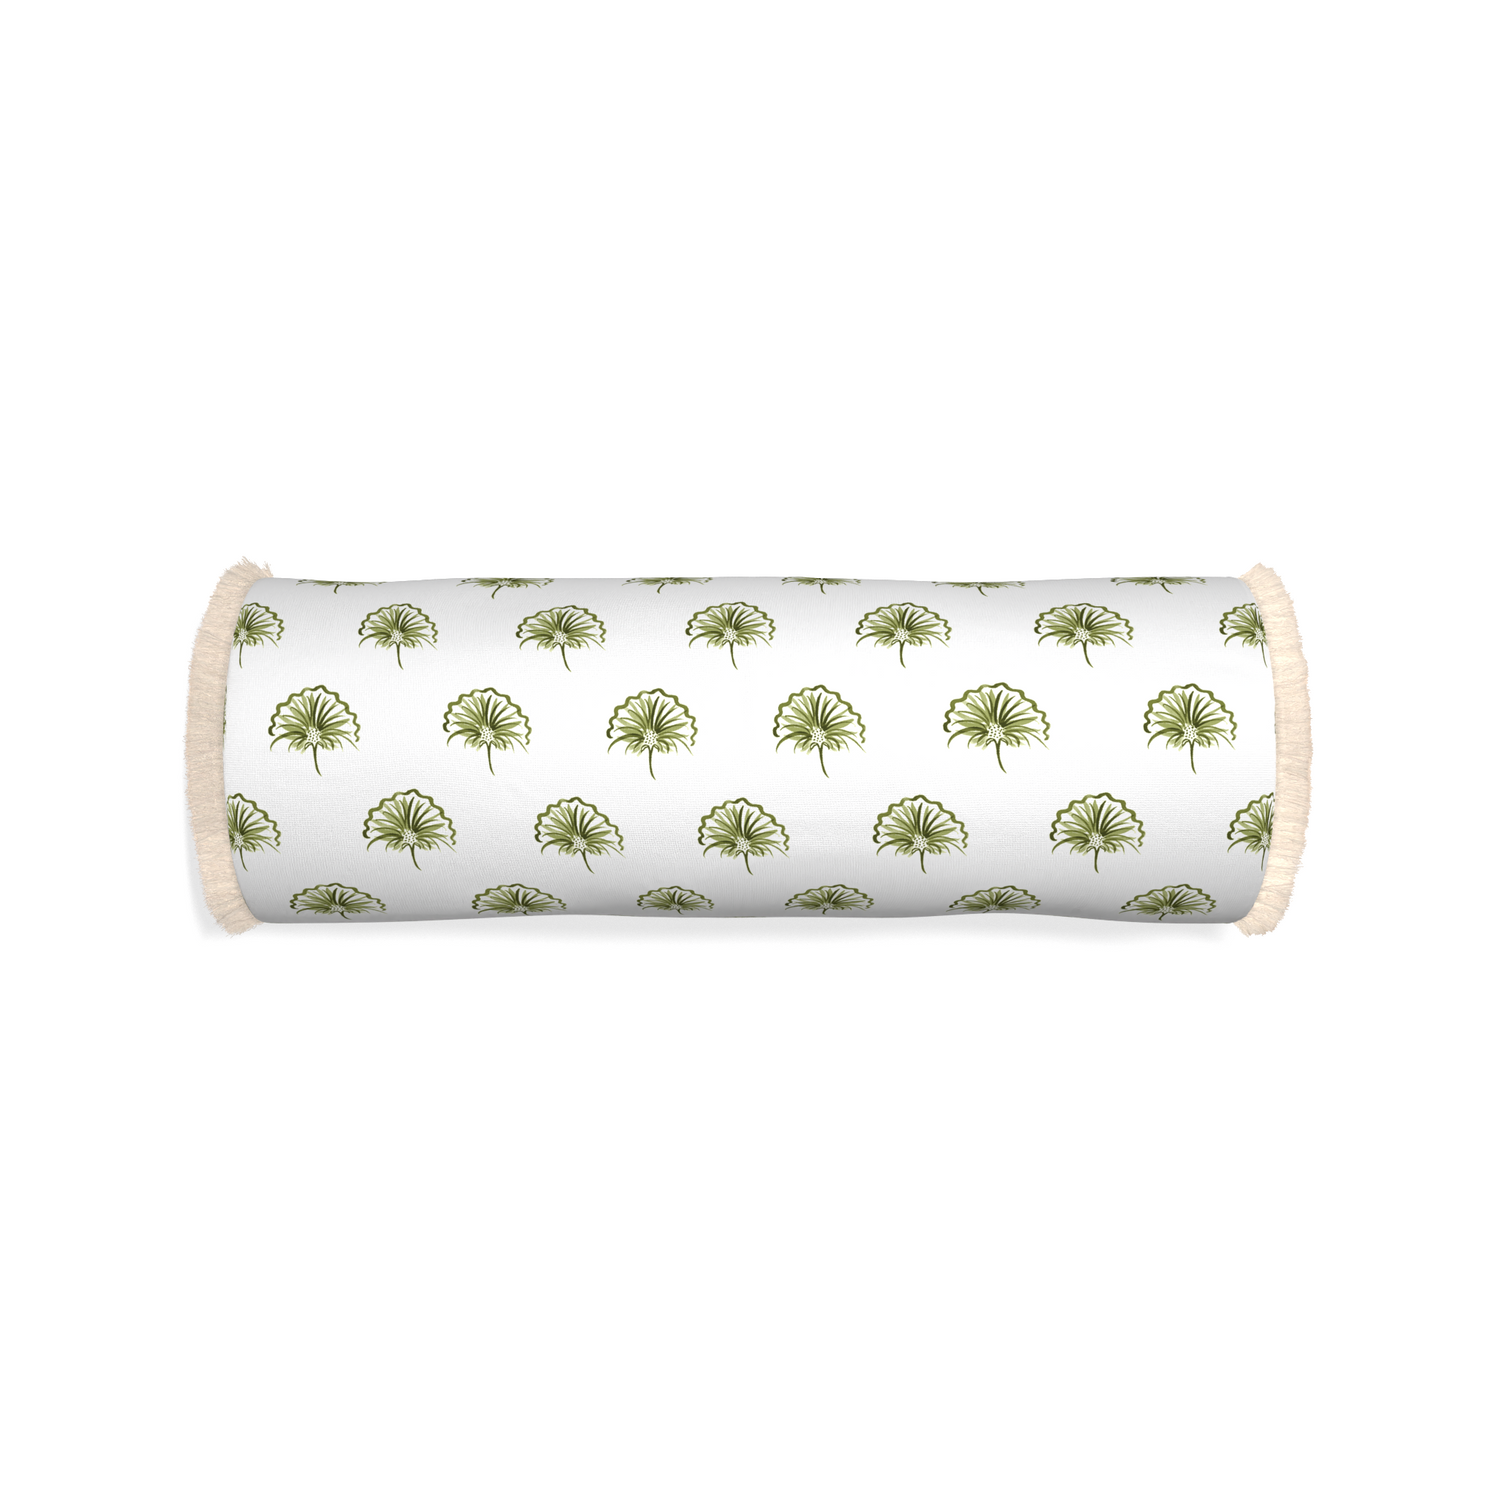 Bolster penelope moss custom pillow with cream fringe on white background